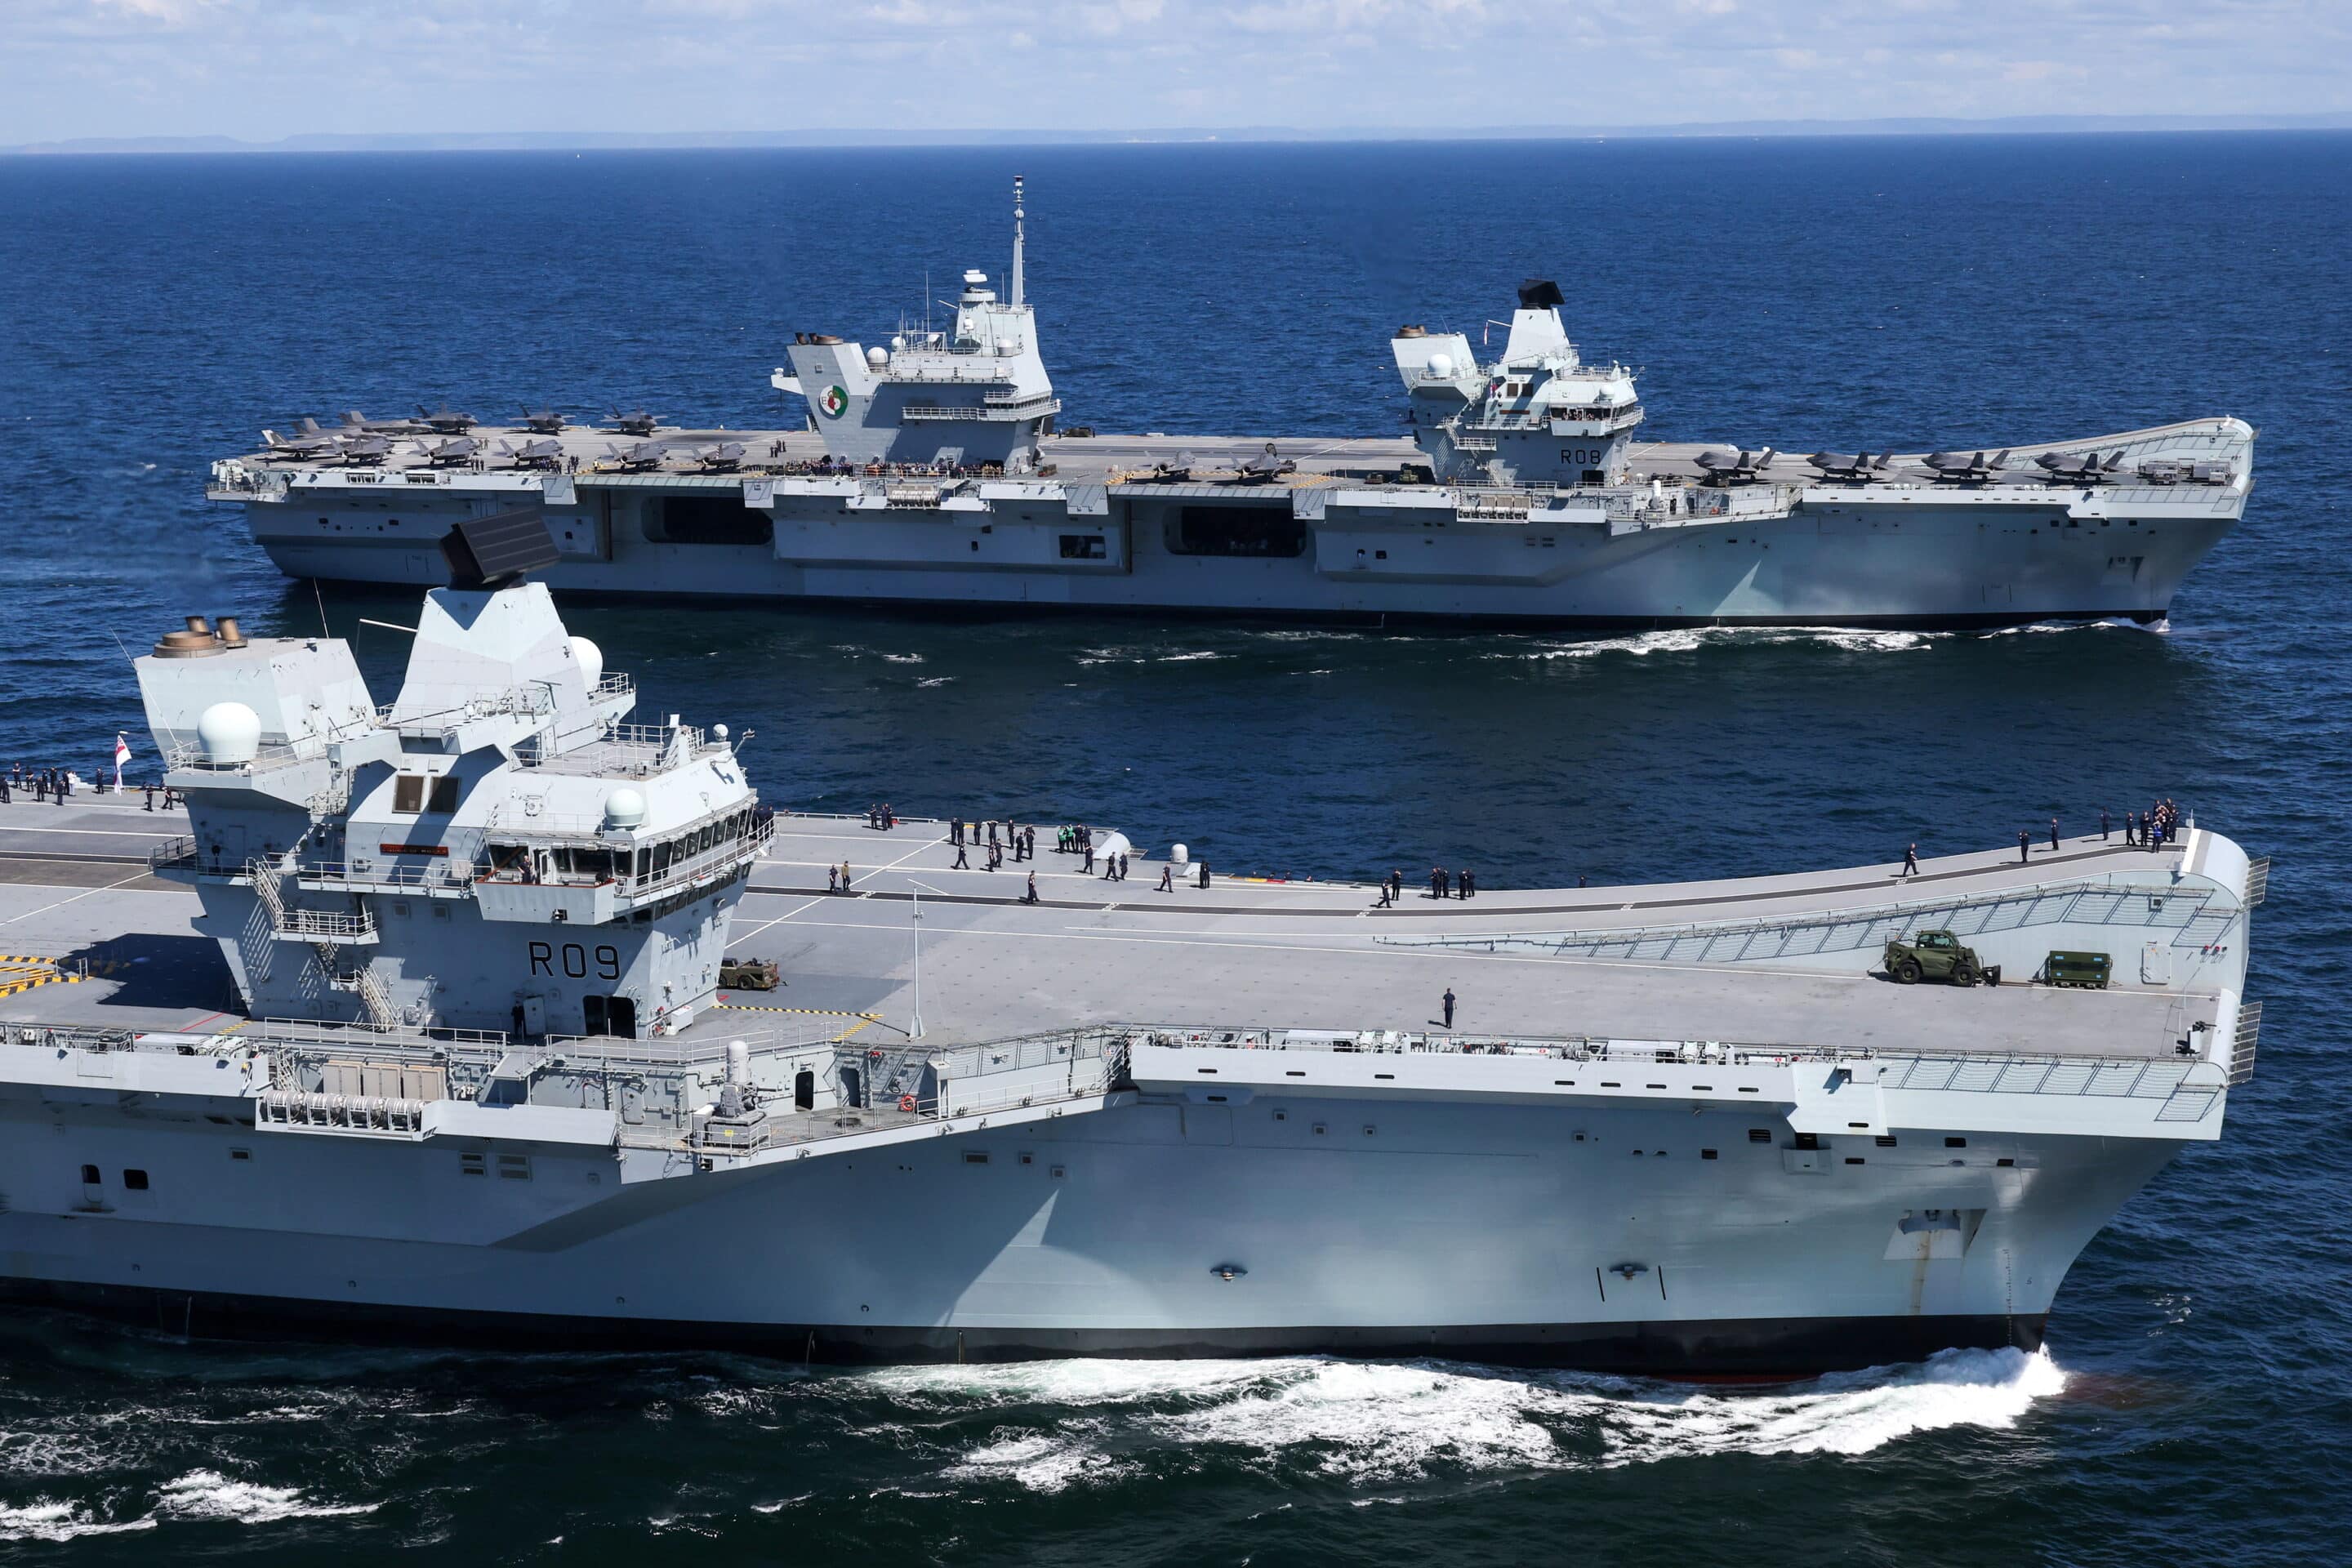 Le HMS Prince of Wales et le HMS Queen Elizabeth photographiés en mer pour la première fois, mai 2021.
Crédits: Royal Navy